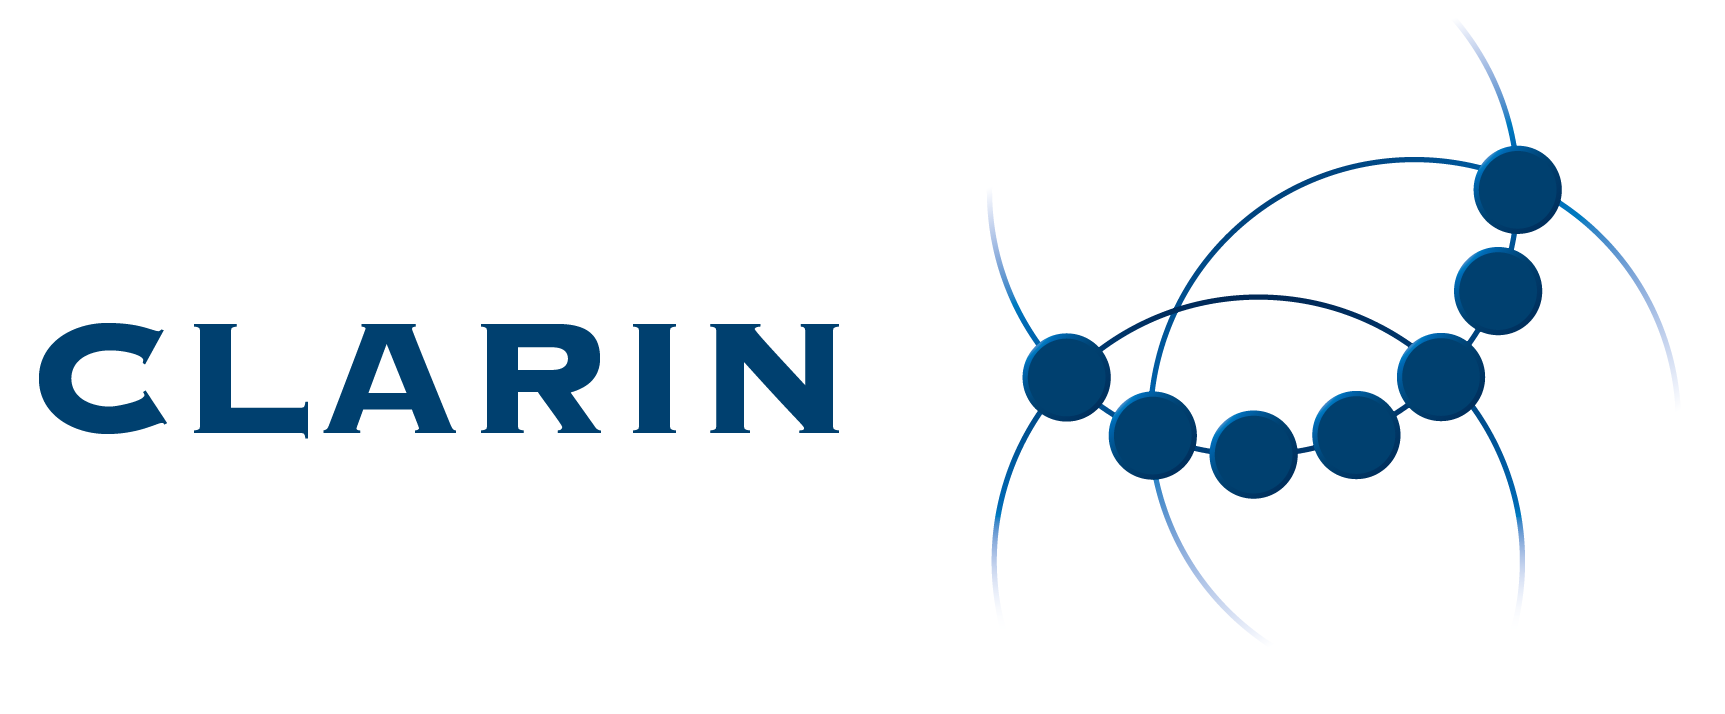 CLARIN ERIC logo